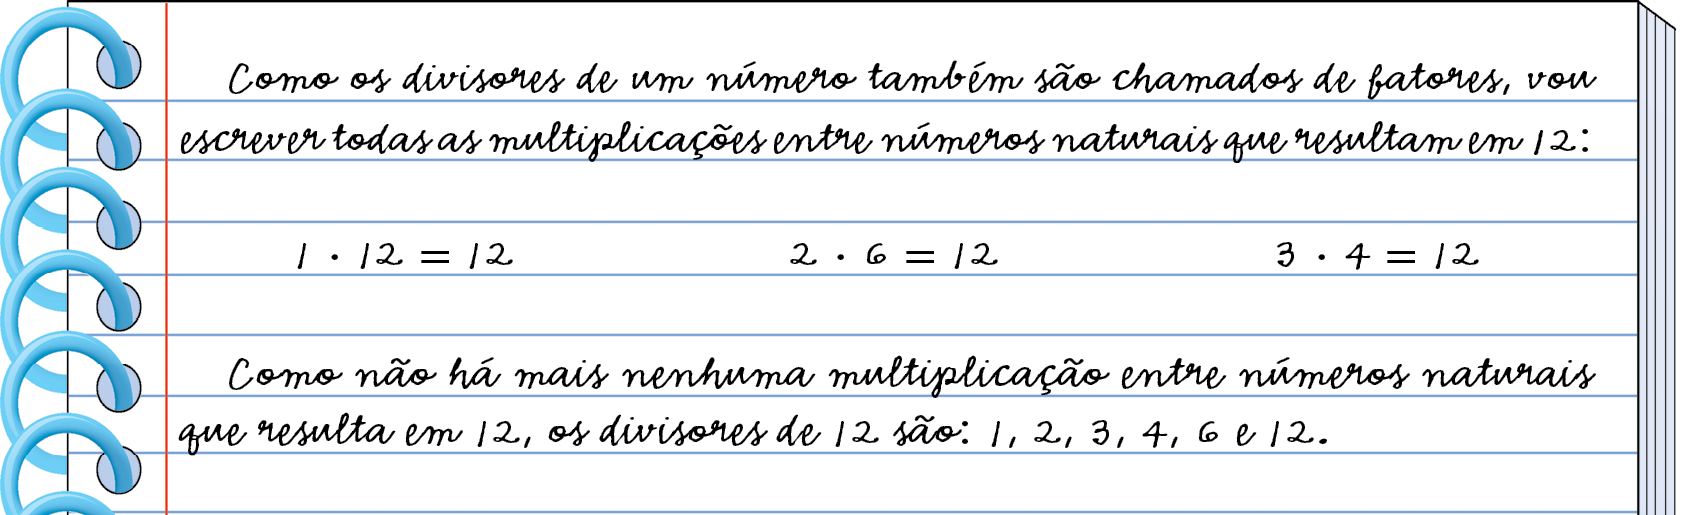 Ilustração. Caderno pautado com espiral. 
Nele está anotado: Como os divisores de um número também são chamados de fatores, vou escrever todas as multiplicações entre números naturais que resultam em 12: 1 vez 12 = 12; 2 vezes 6 = 12; 3 vezes 4 = 12.
Como não há mais nenhuma multiplicação entre números naturais 
que resulta em 12, os divisores de 12 são: 1, 2, 3, 4, 6 e 12.